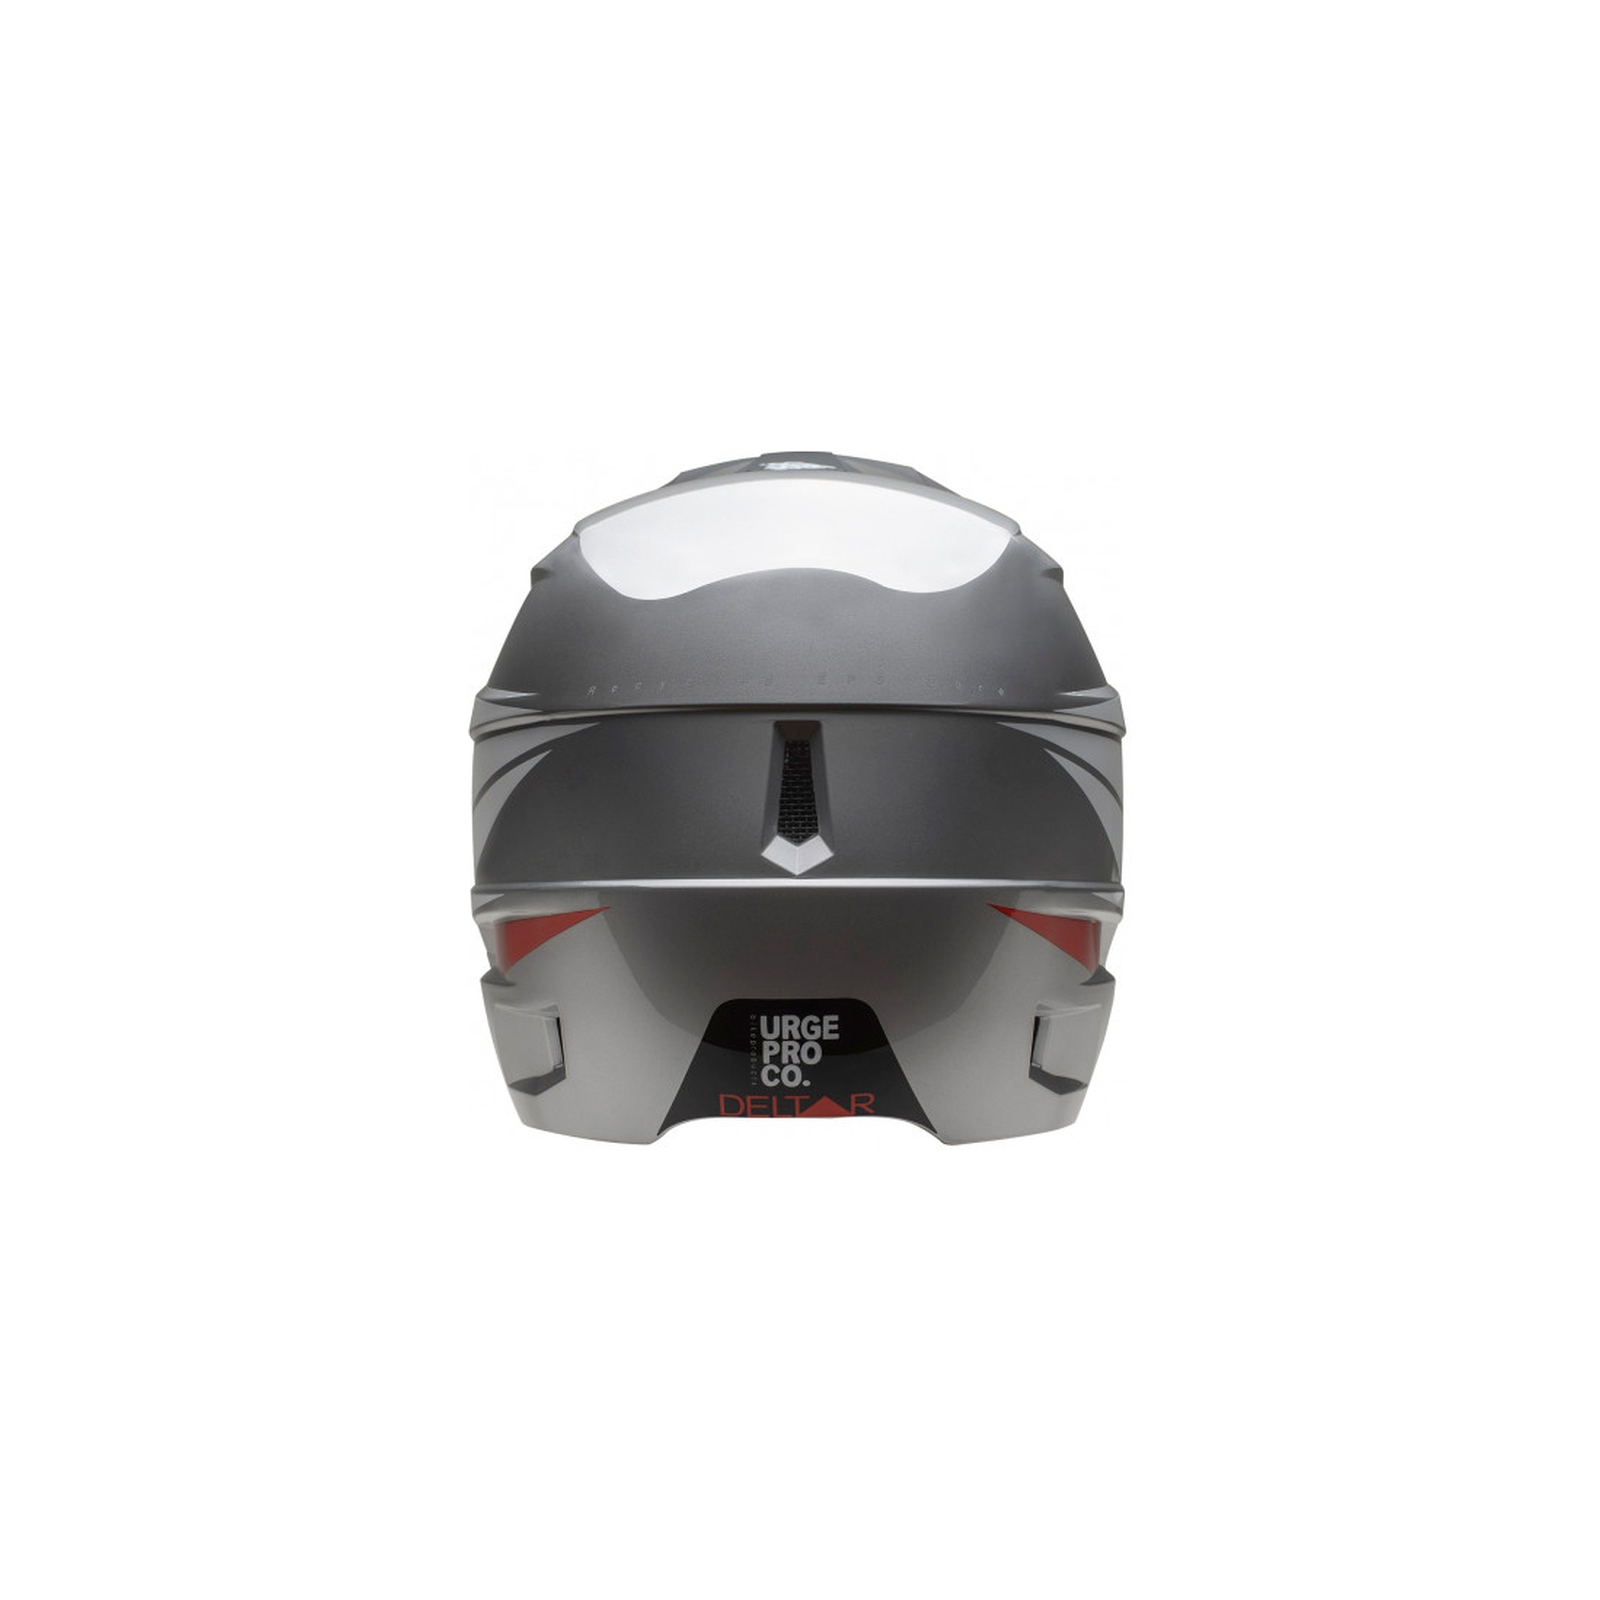 Шлем Urge Deltar Чорний XL 59-60 см (UBP21330XL) изображение 4